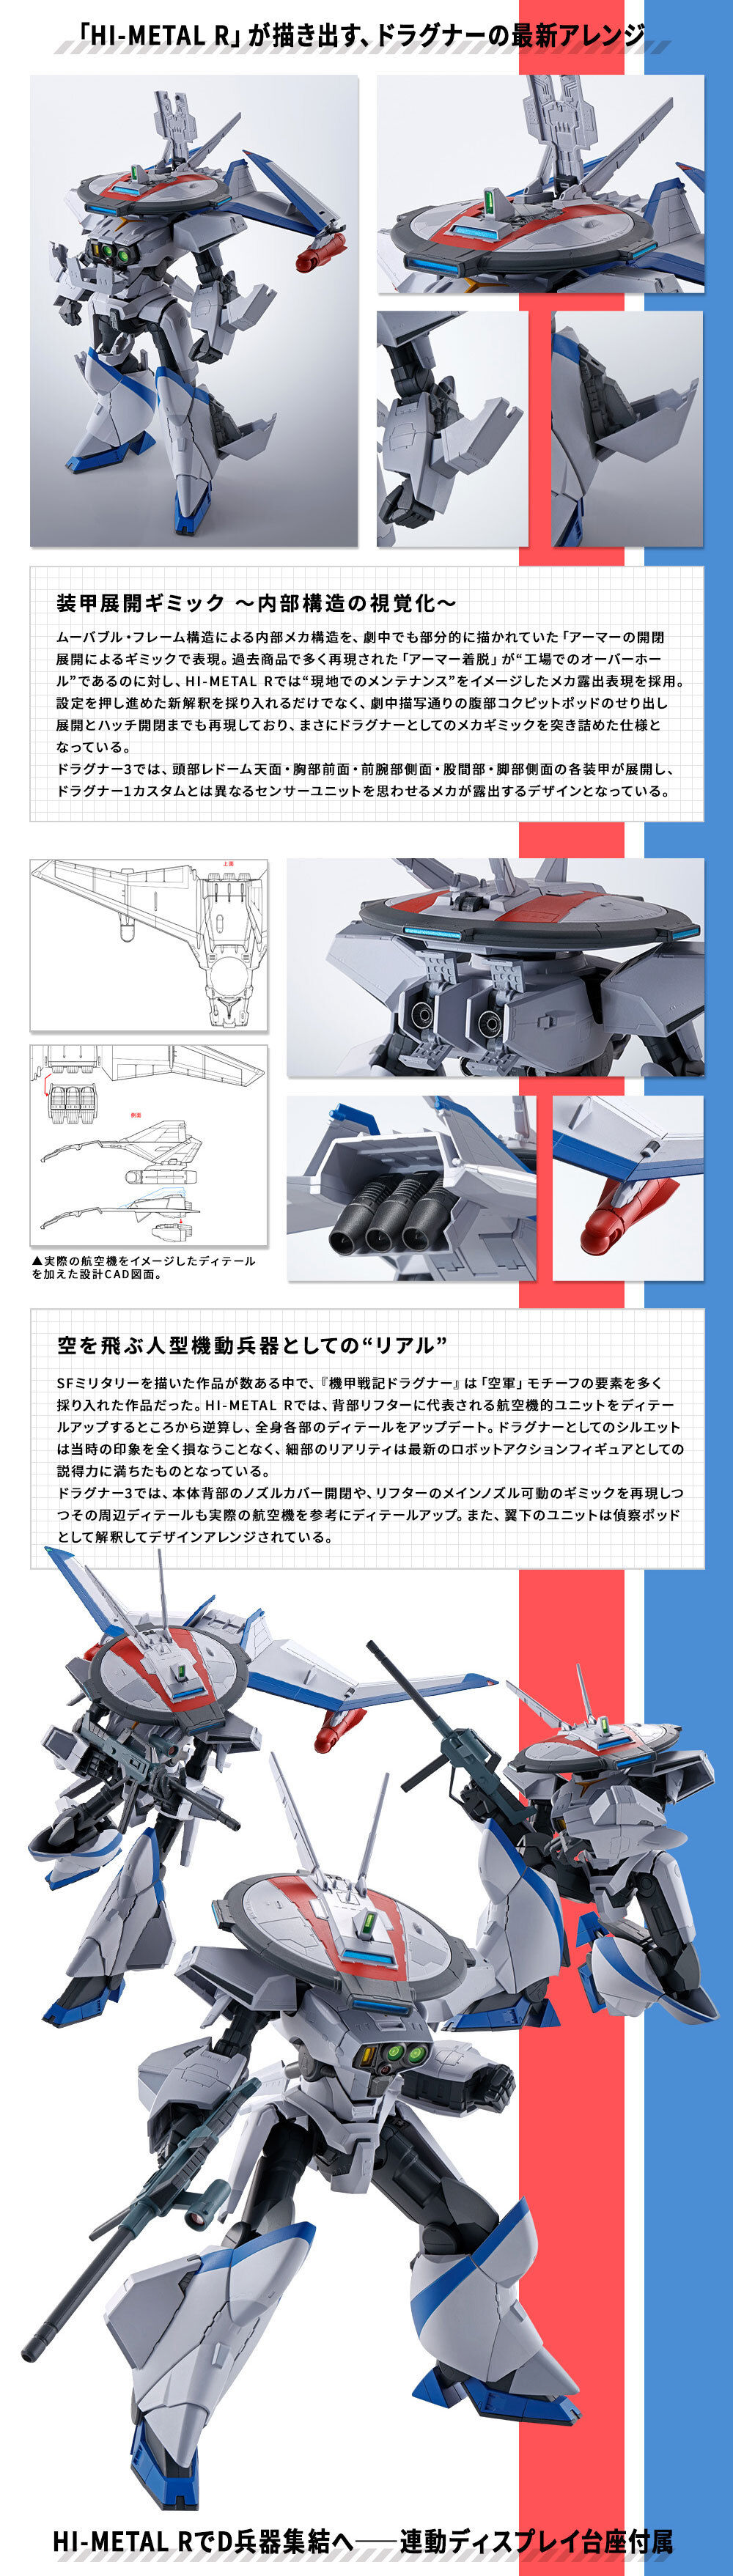 HI-METAL R ドラグナー3 フィギュア・プラモデル・プラキット バンダイナムコグループ公式通販サイト